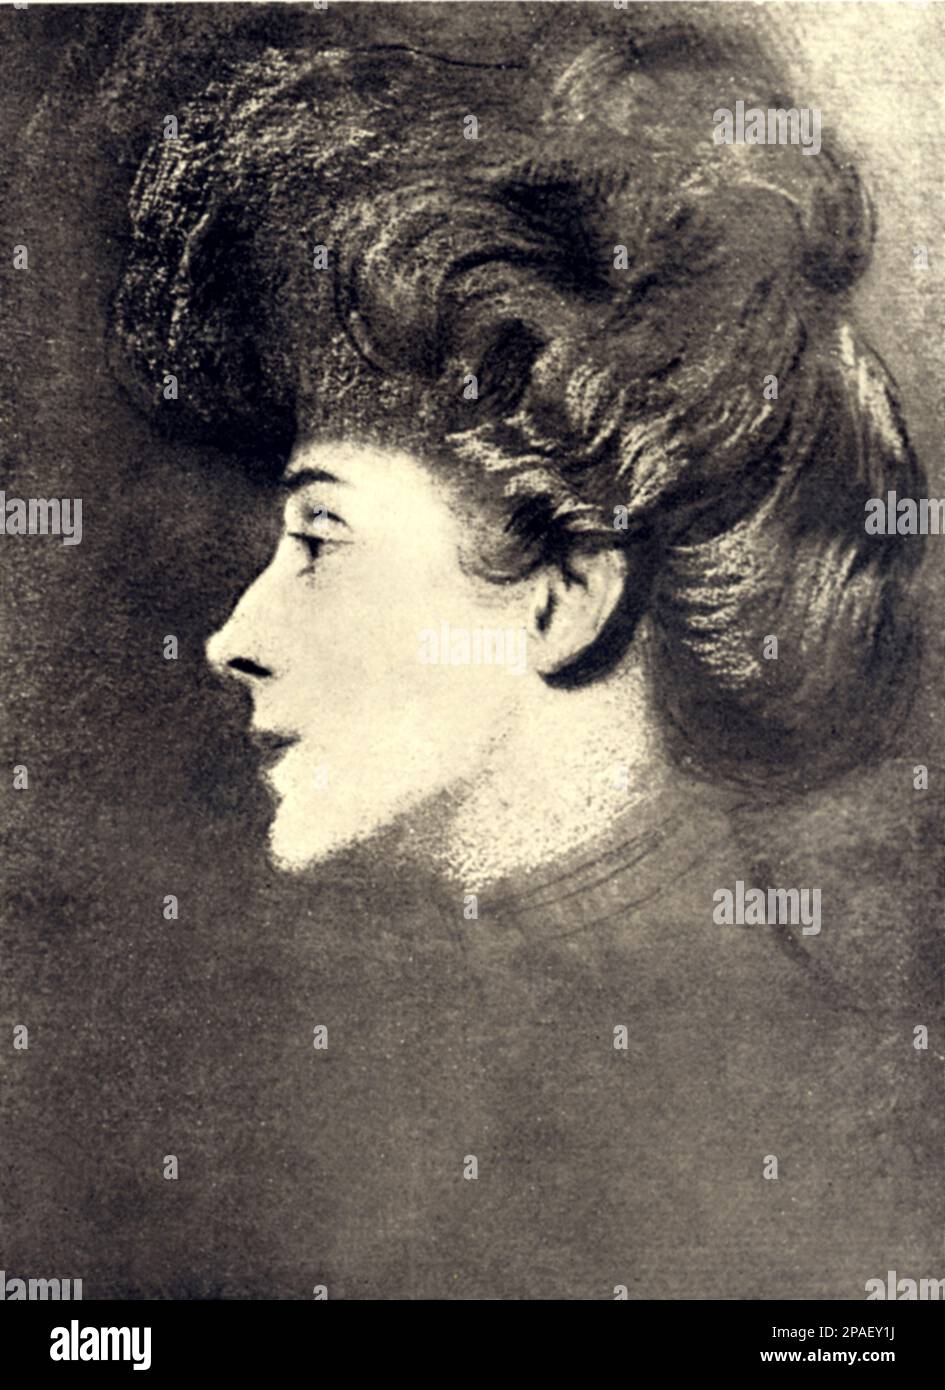 La principessa MARIA HARDOUIN Duchessa DEL GALLESE , sposò nel 1883 il poeta , politico e scrittore italiano GABRIELE D'ANNUNZIO (Pescara 1863 - Gardone Riviera 1938 ) . Portraiato a Parigi dal suo amante , il pittore ispano-francese ANTONIO DE LA GANDARA . - Profilo - profilo - ritratto - ritratto - DAnnunzio - D' ANNUNZIO - - principessa - nobili - nobiltà - Nobiltà italiana ---- ARCHIVIO GBB Foto Stock